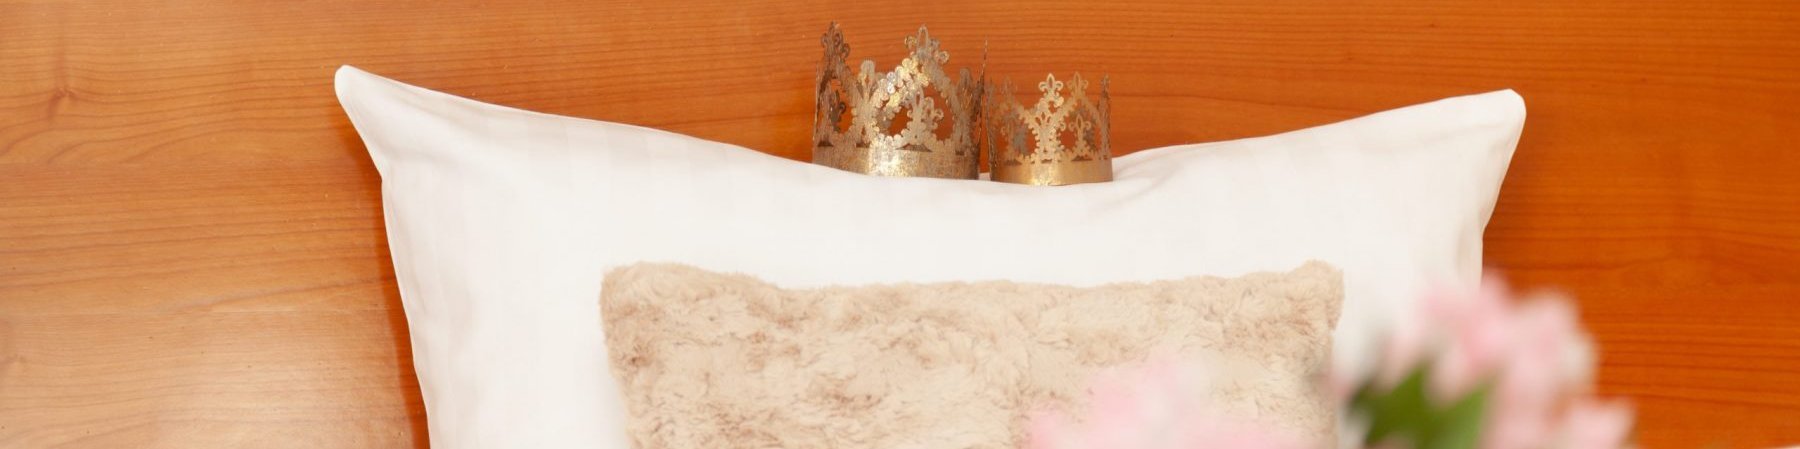 Kissen auf dem gemachten Bett mit echten, kleinen Königskrönchen für Sie und Ihn darauf